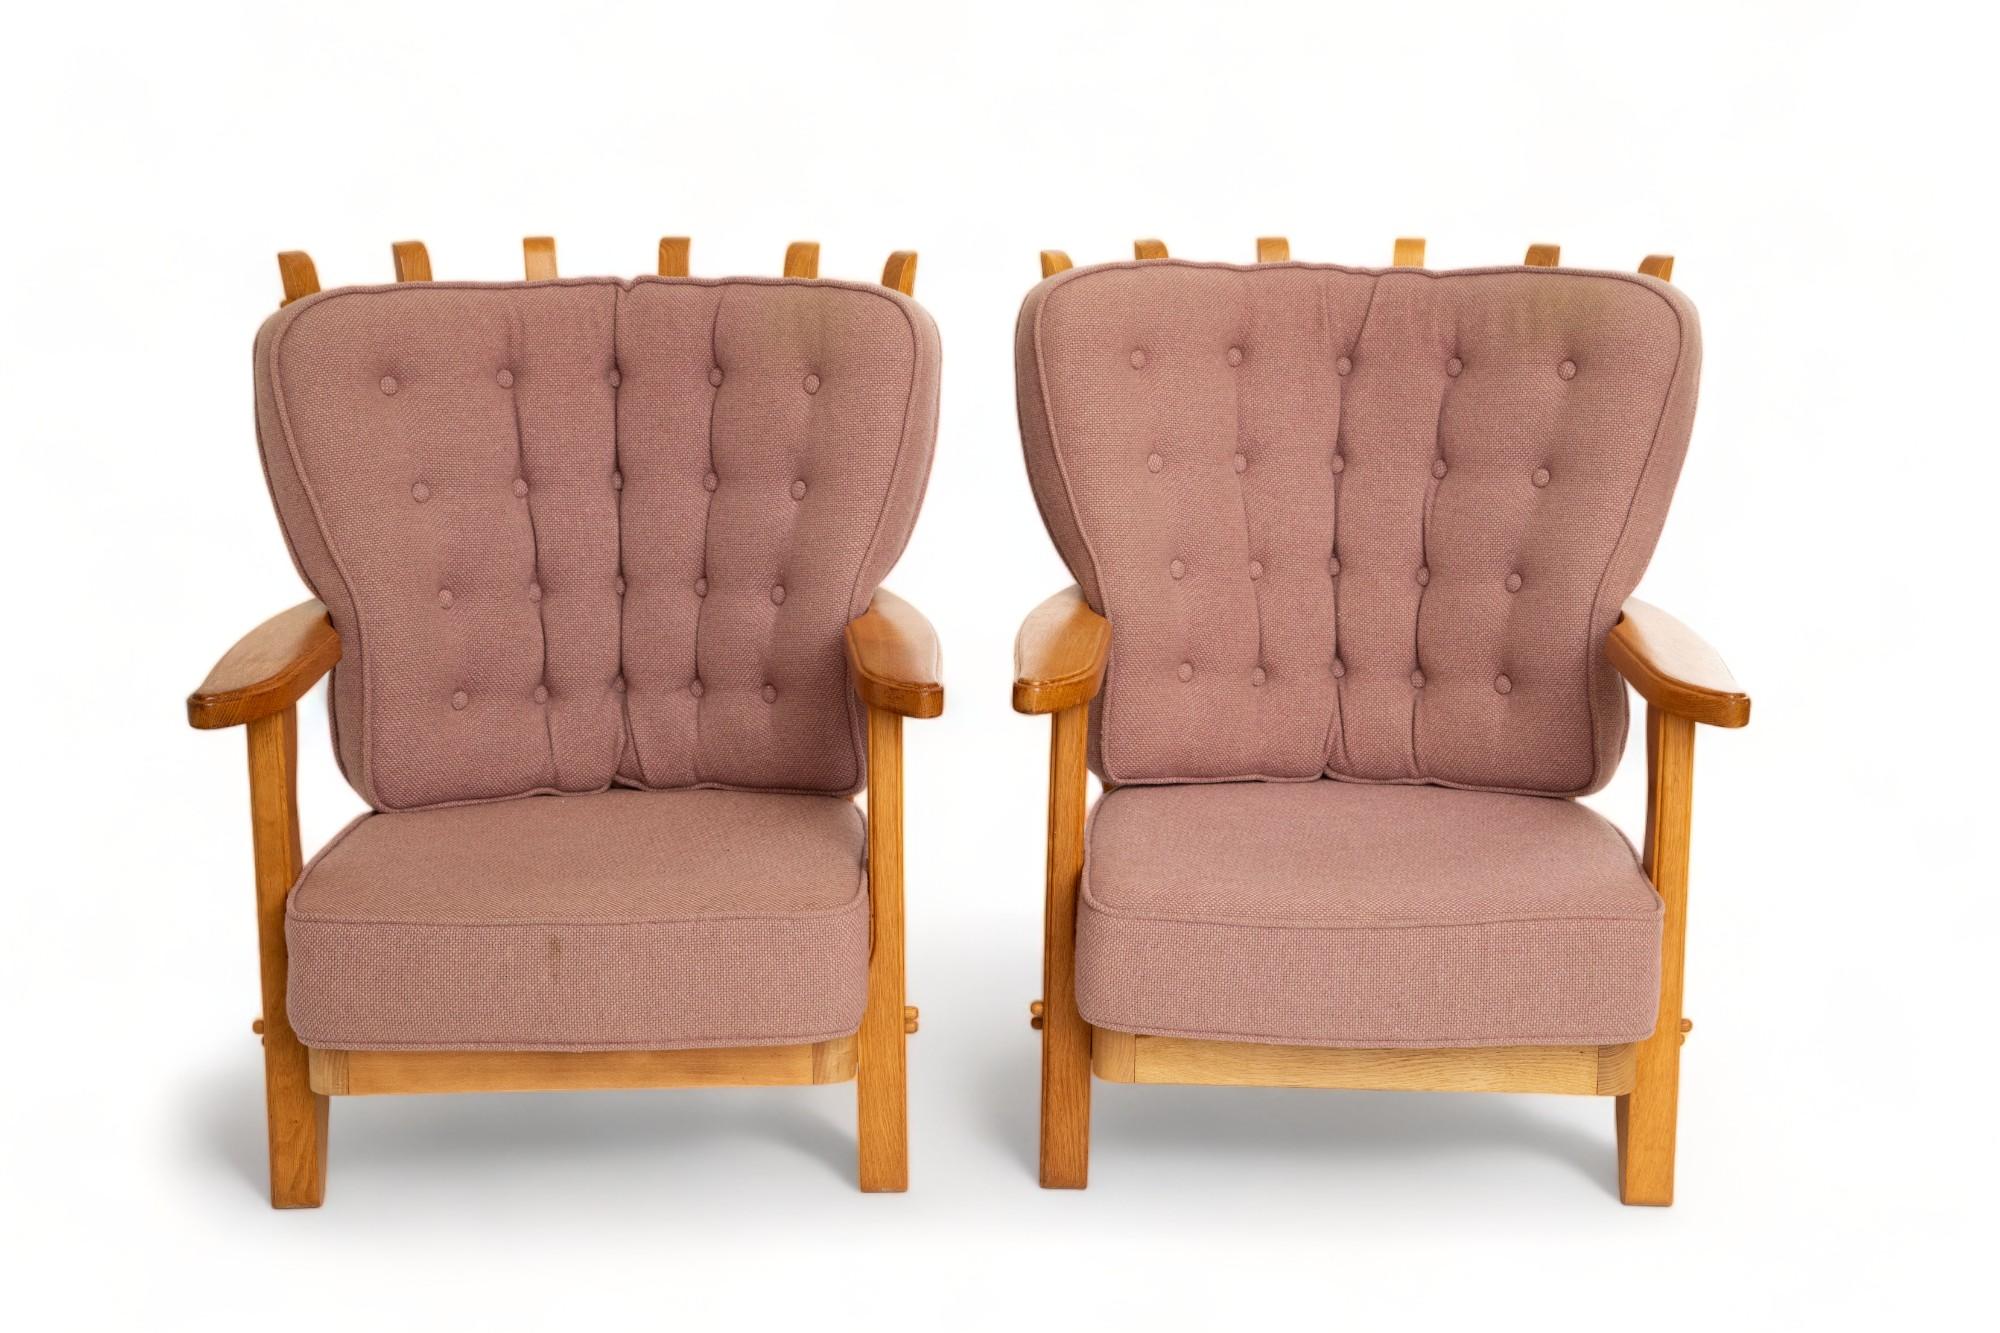 Paire de chaises longues en chêne par Guillerme et Chambron, France 1960
Ce modèle est un dépôt intermédiaire 
Forme organique sculpturale, dos en forme de doigt 
Conserve une belle patine chaude
Ces chaises ont leur propre tissu de laine original,